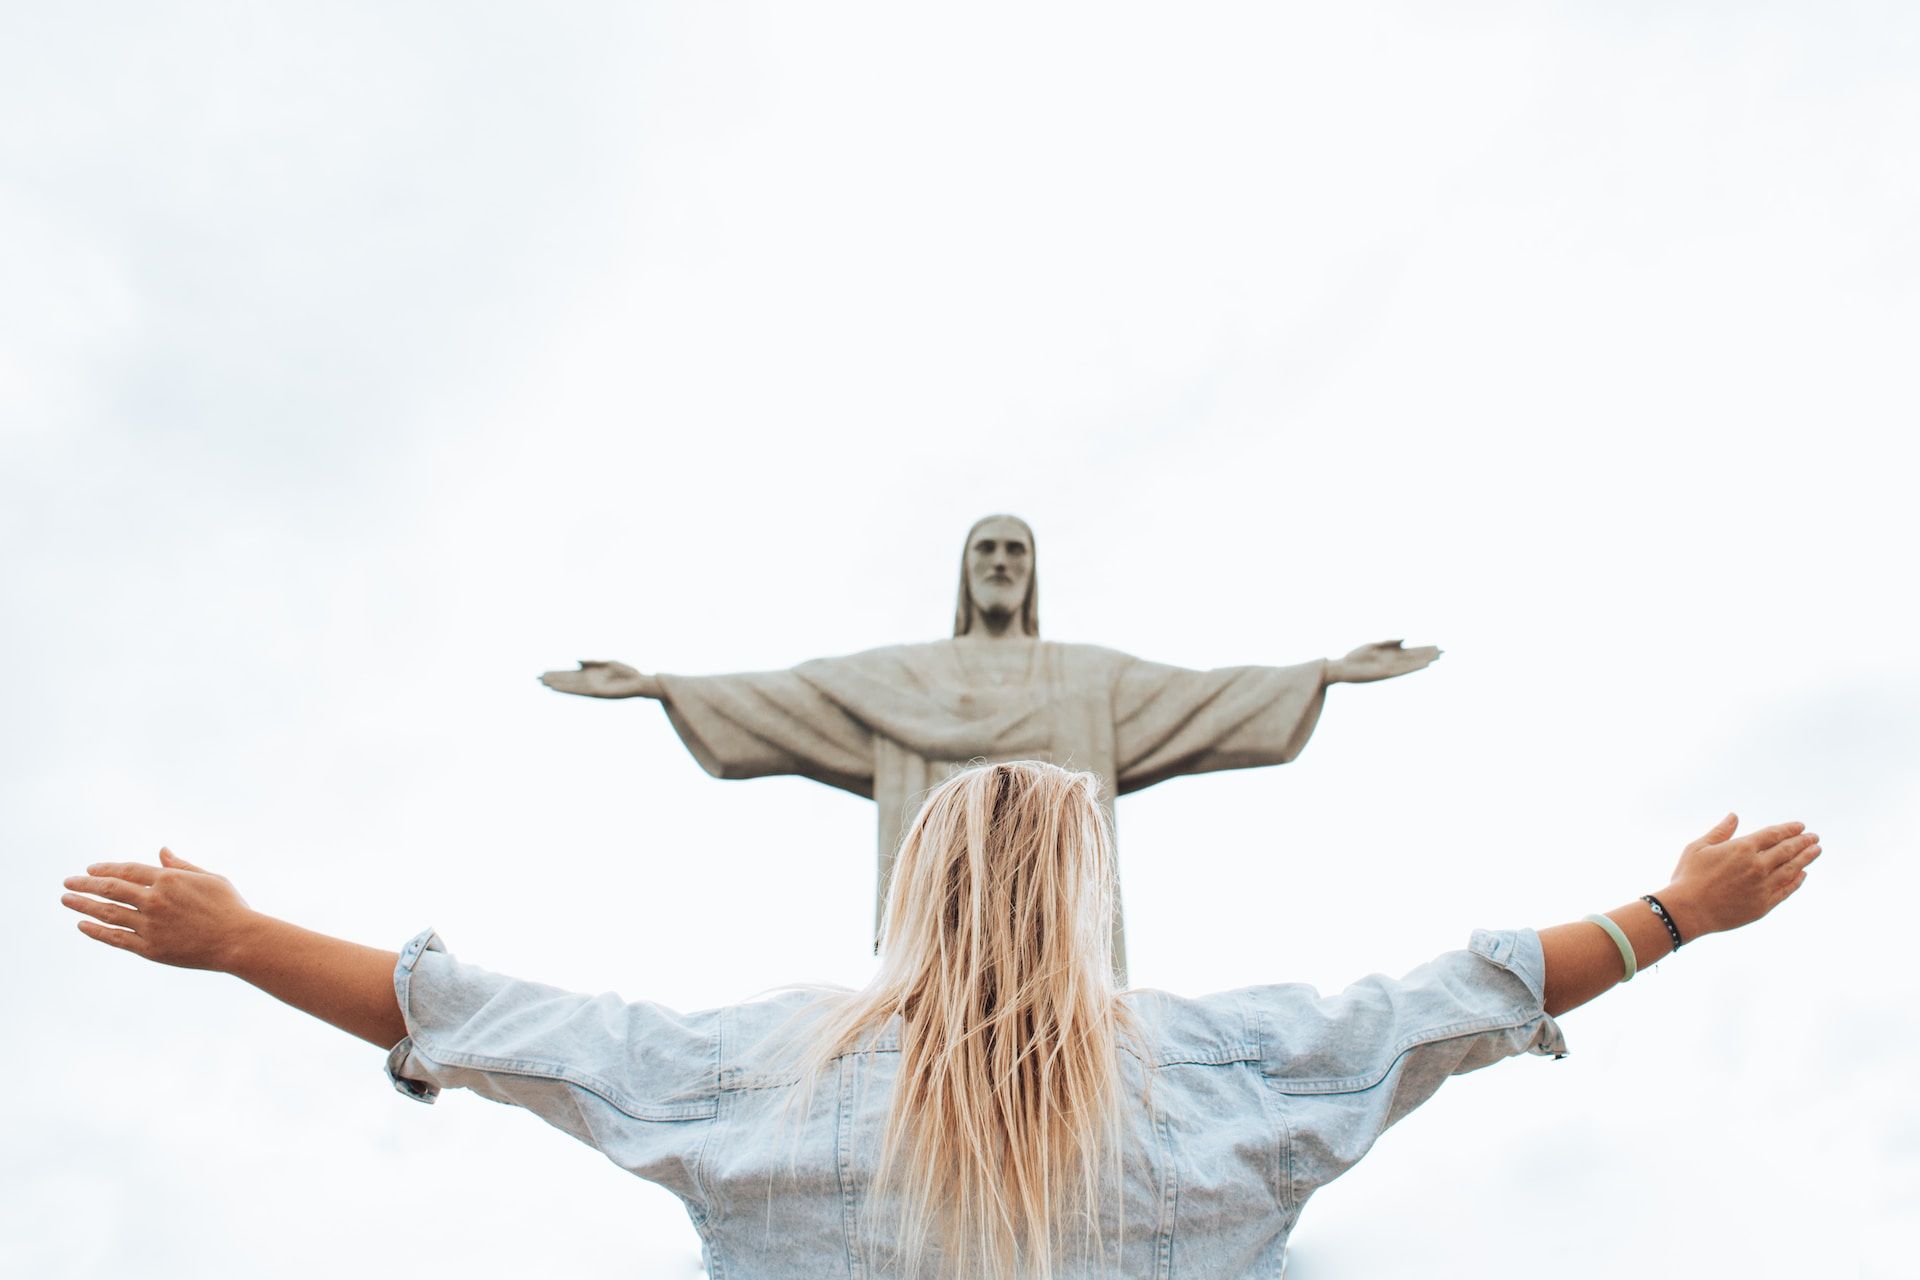 une personne de sexe indéterminé, avec des cheveux longs prend la posture du Christ de Rio - Photo by Marcos Paulo Prado on https://unsplash.com/fr/photos/femme-en-chemise-a-manches-longues-blanche-et-jean-en-denim-bleu-Iv0mvJx9uLM